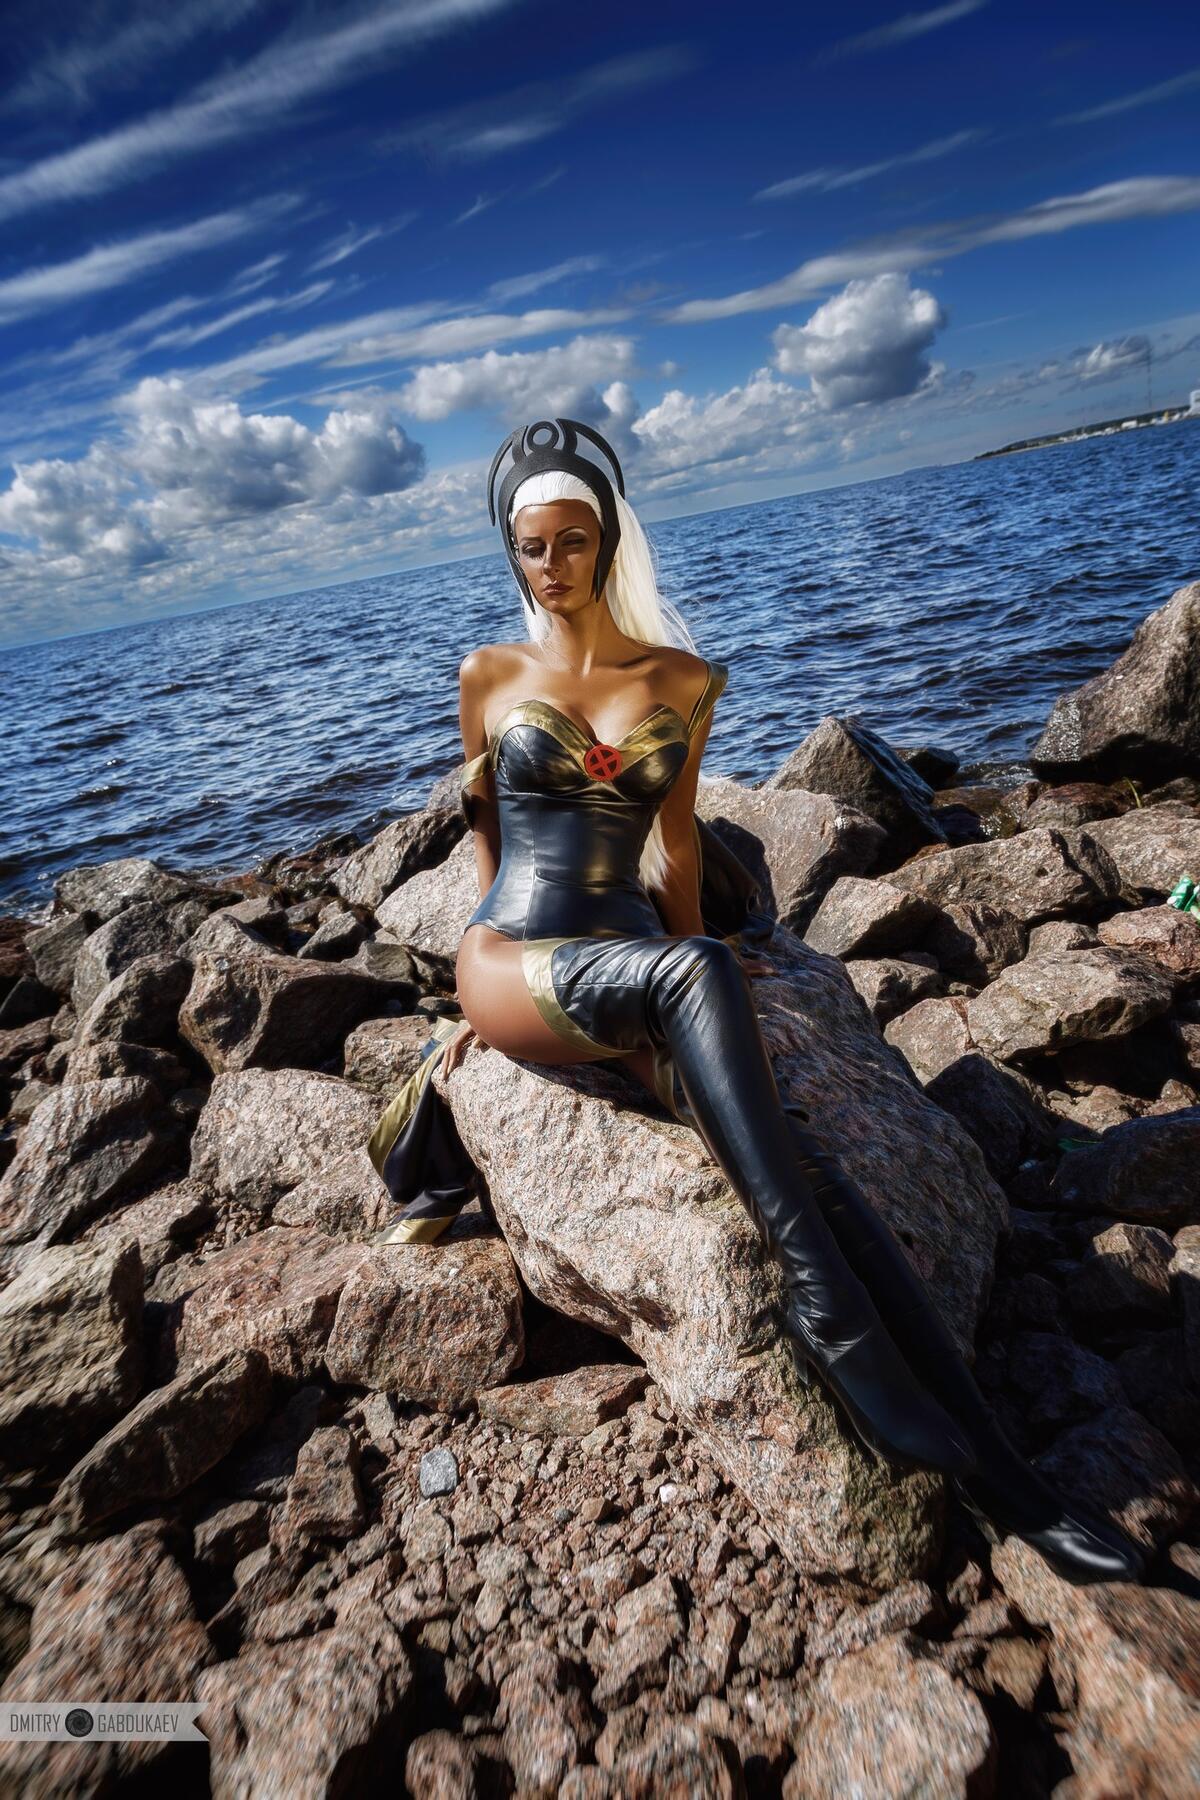 安雅-沃耶沃多娃在海滩上拍摄cosplay照片